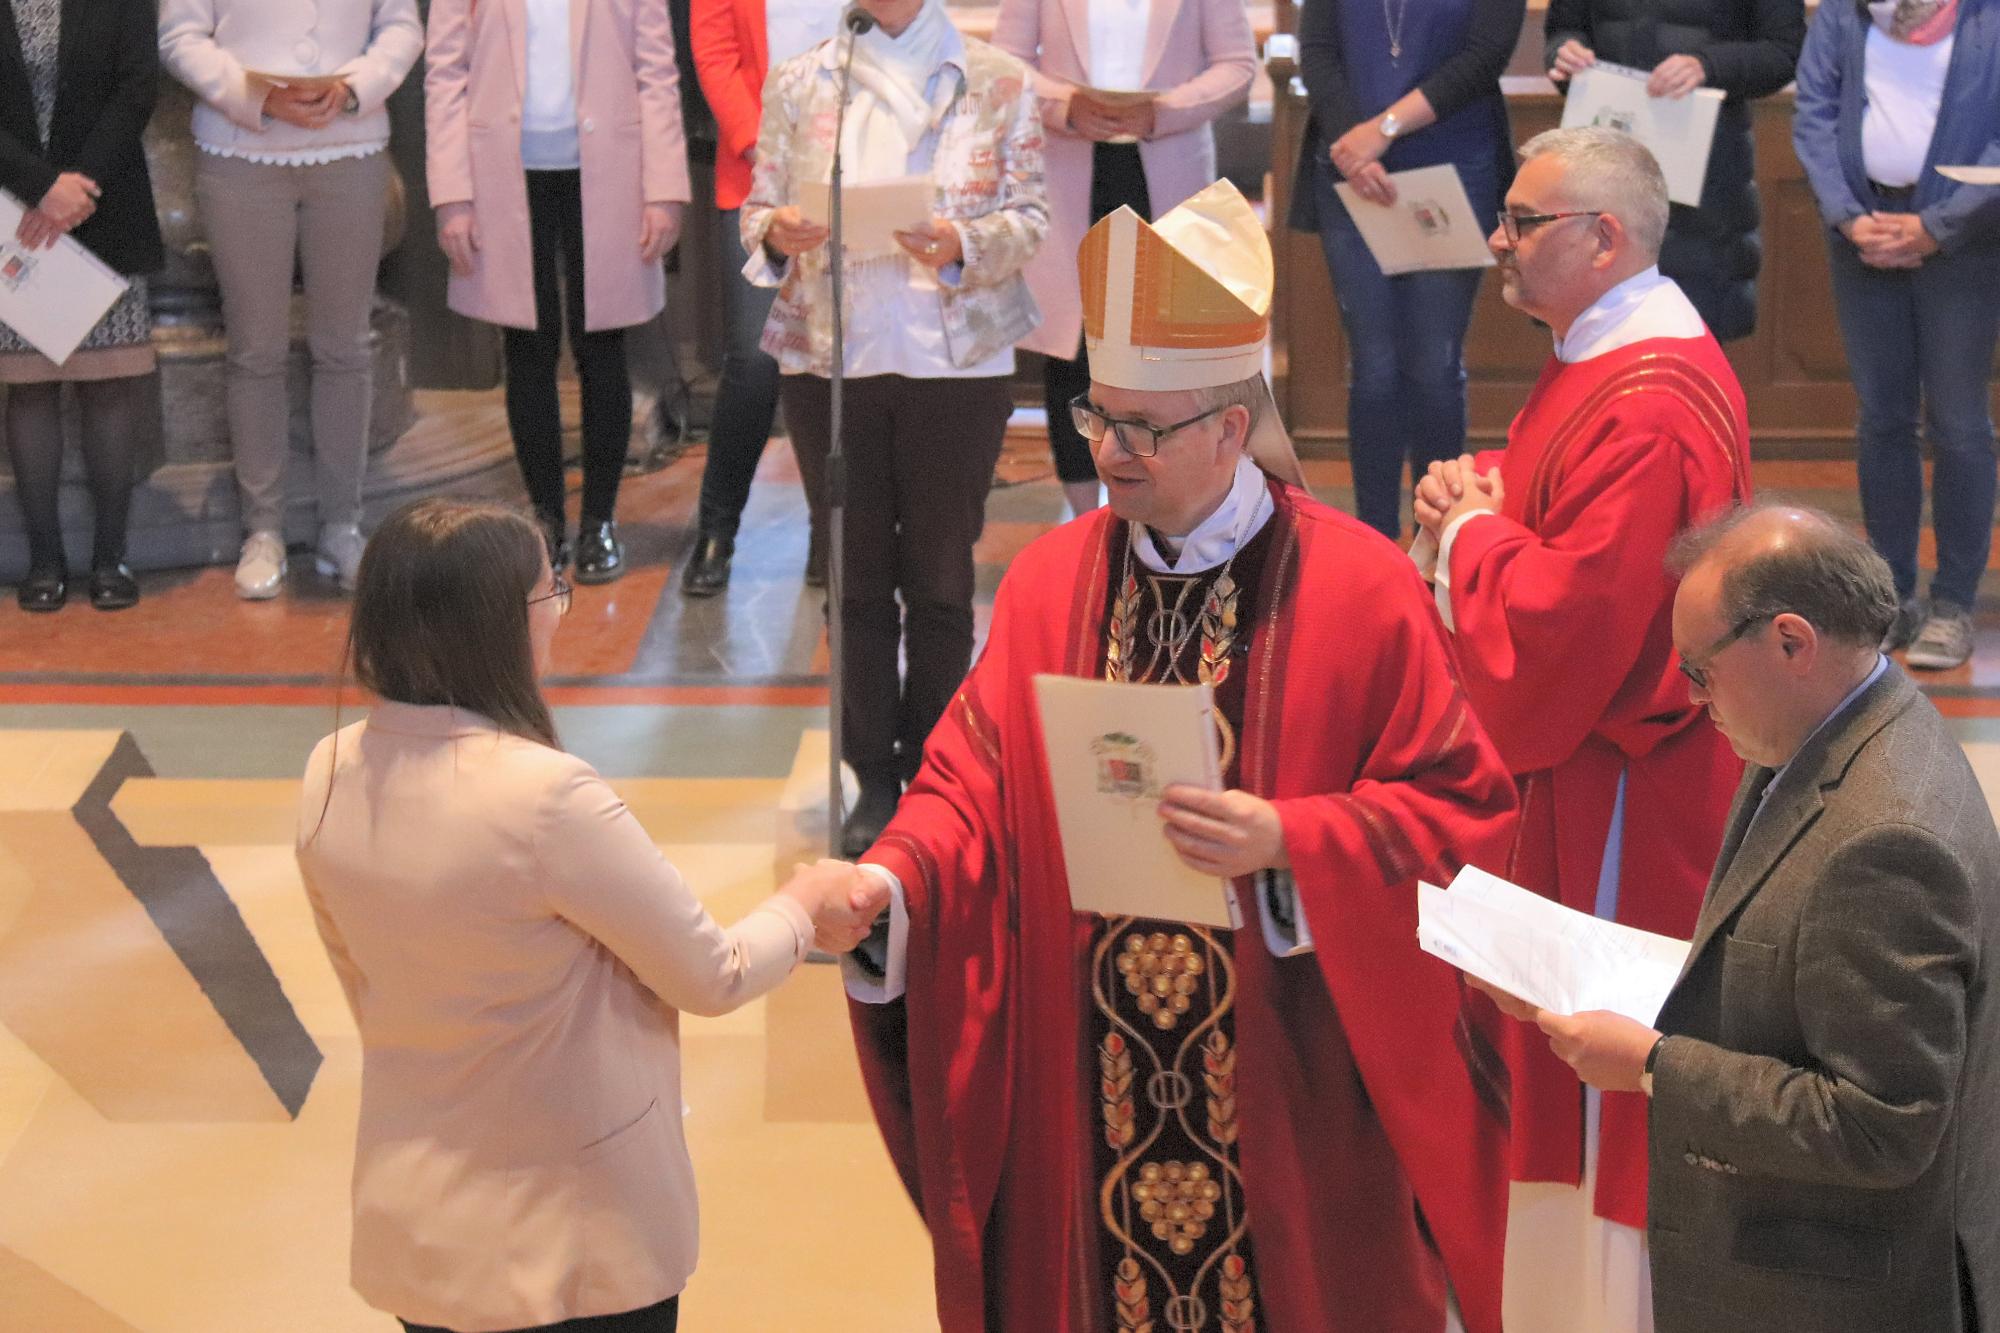 Mainz, 3.5.2019: Bischof Peter Kohlgraf verleiht einer Religionslehrerin die Urkunde zur Missio canonica.